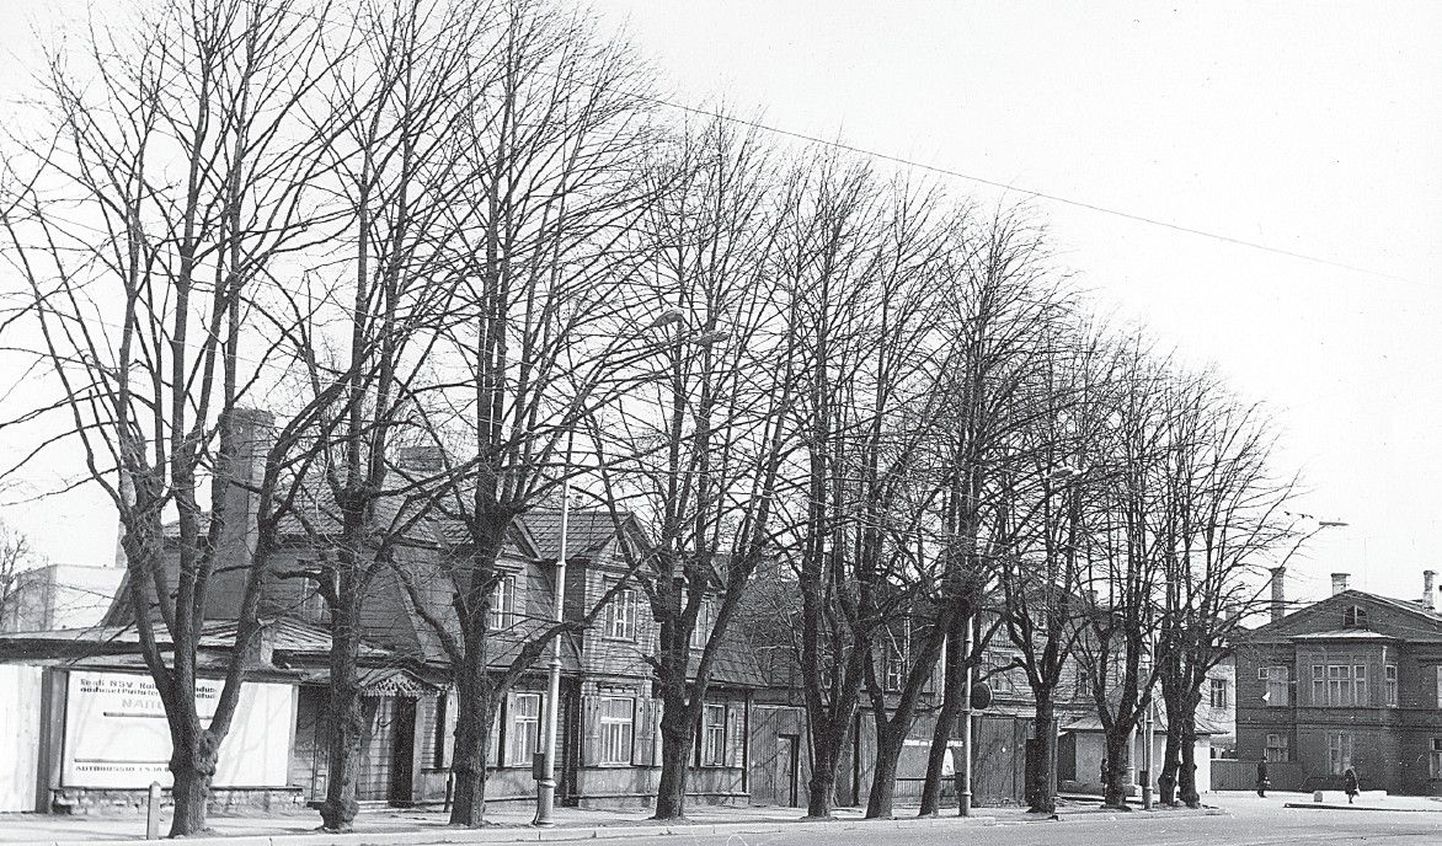 Ameerika Ühendriikide konsulaat asus Tallinnas Narva tn 7, hoones, mida enam pole olemas.